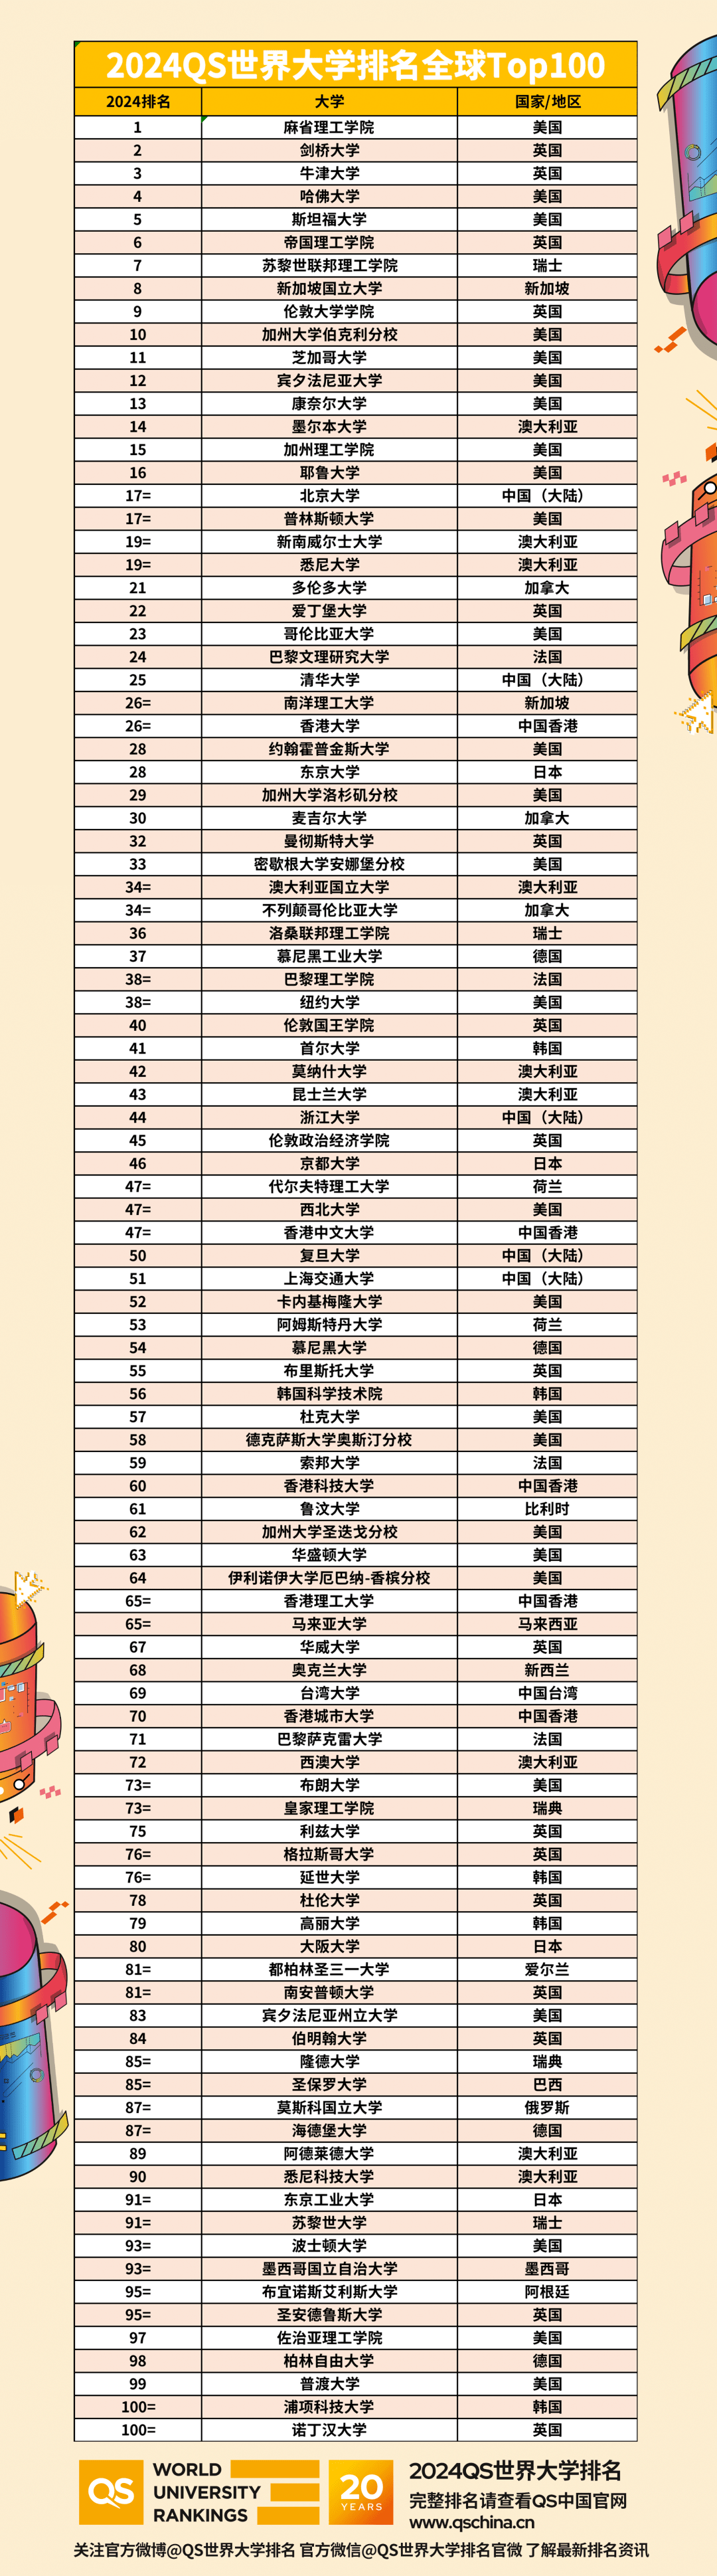 2024年QS世界大学排名中国（大陆）高校名单